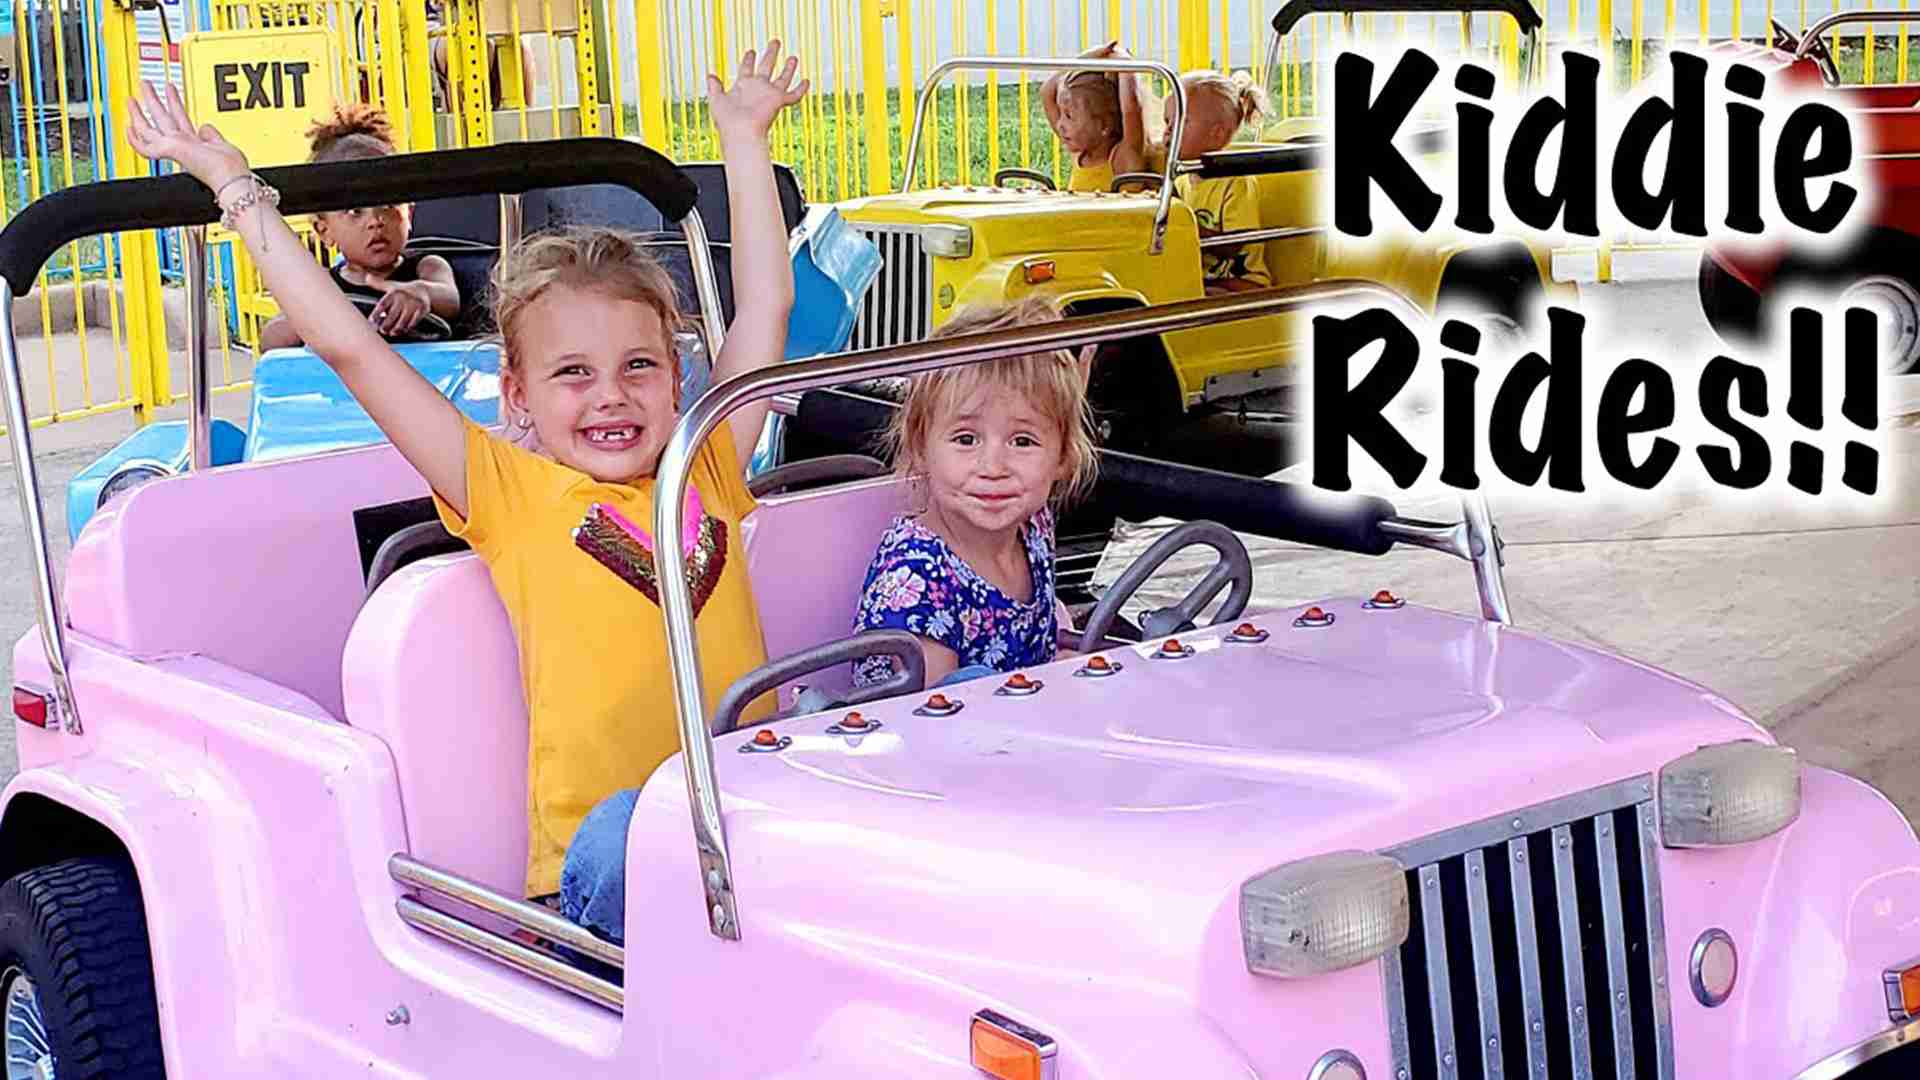 village kiddie ride business